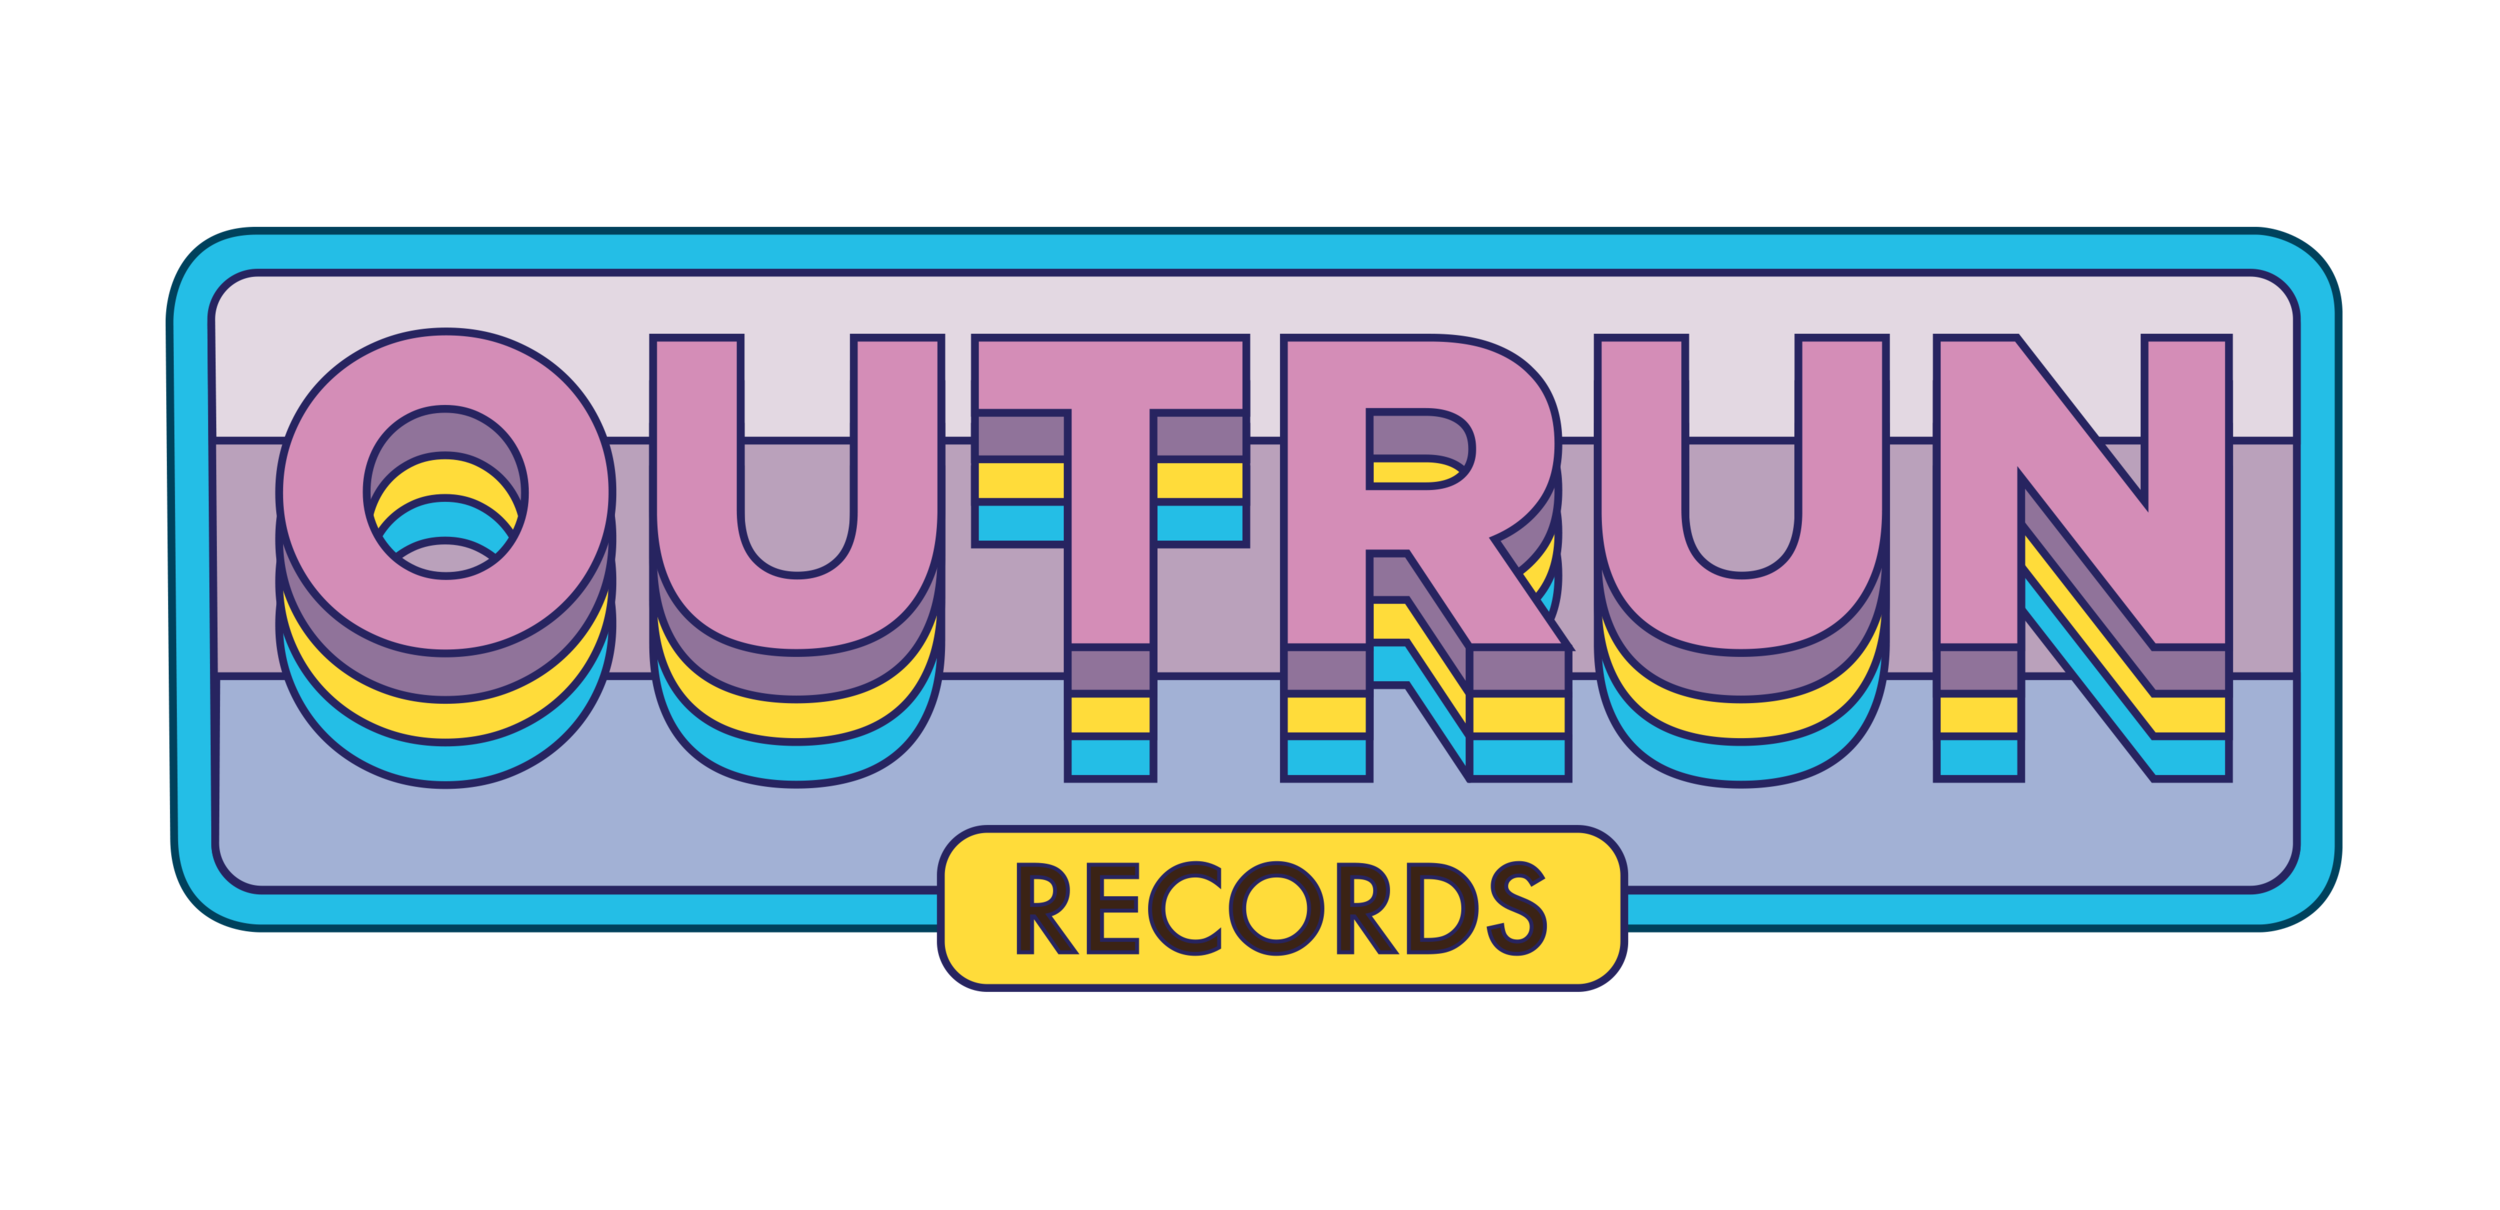 Outrun Records